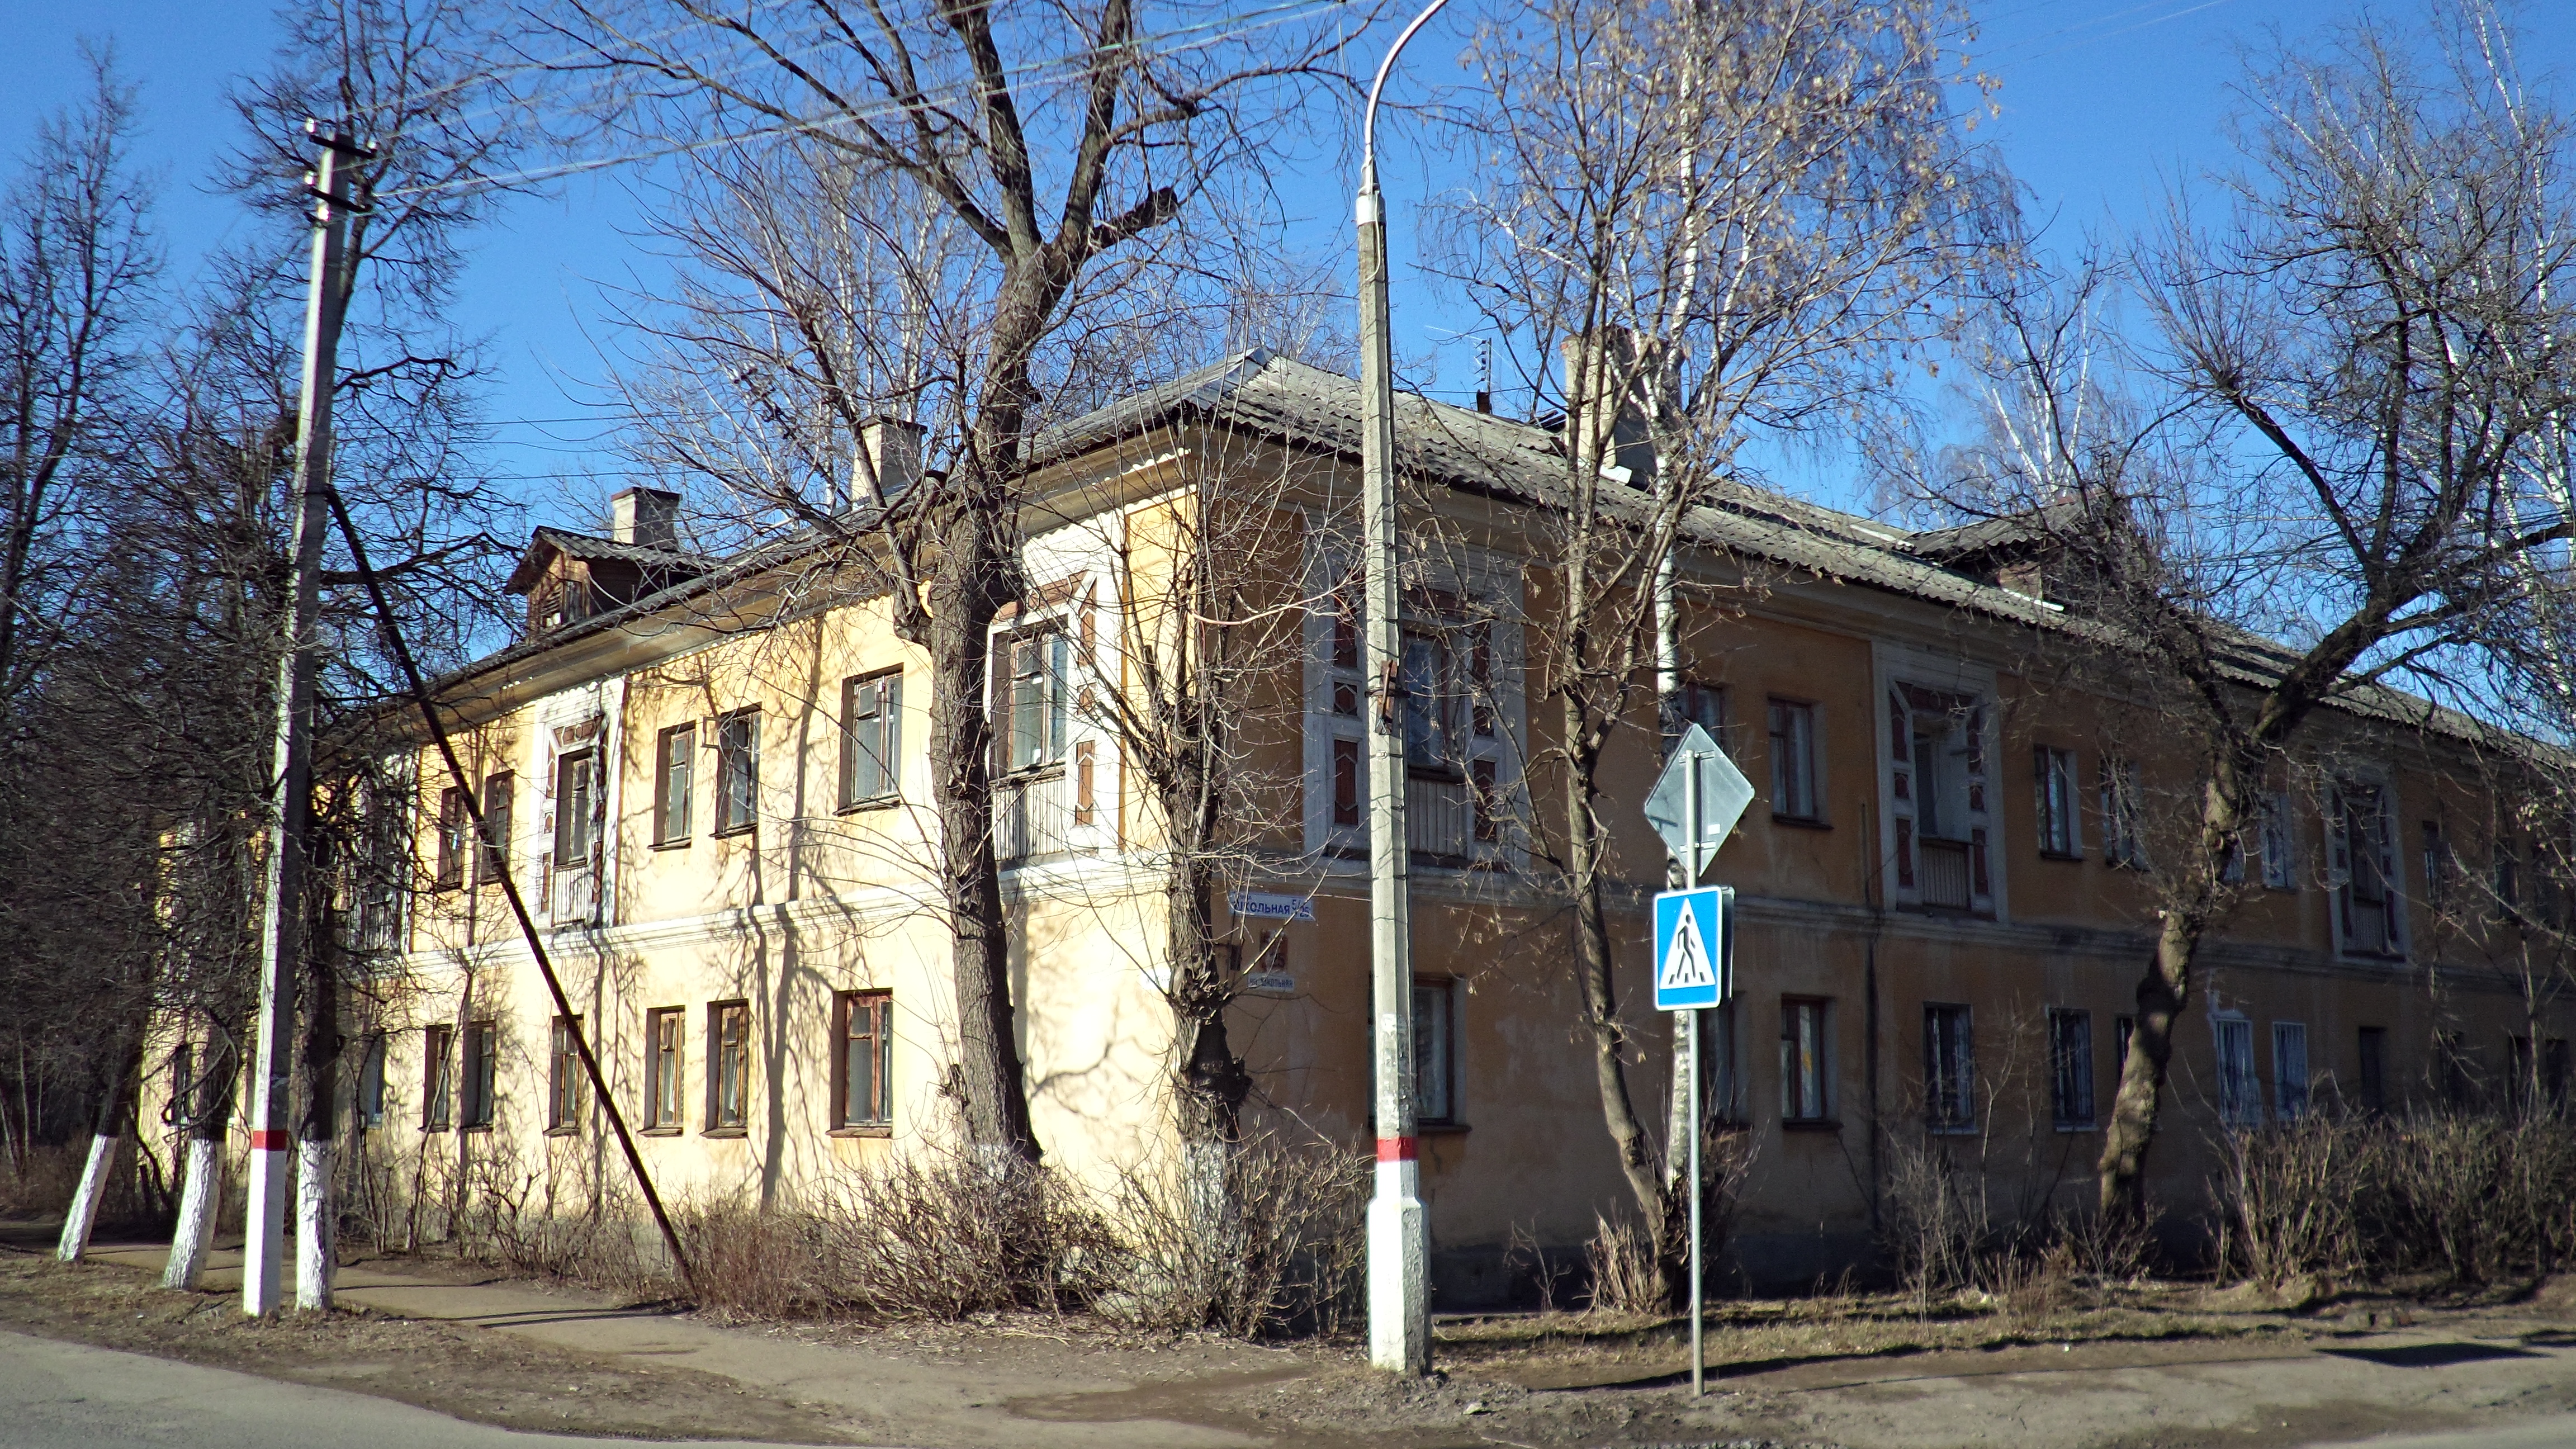 Школа улица чкалова